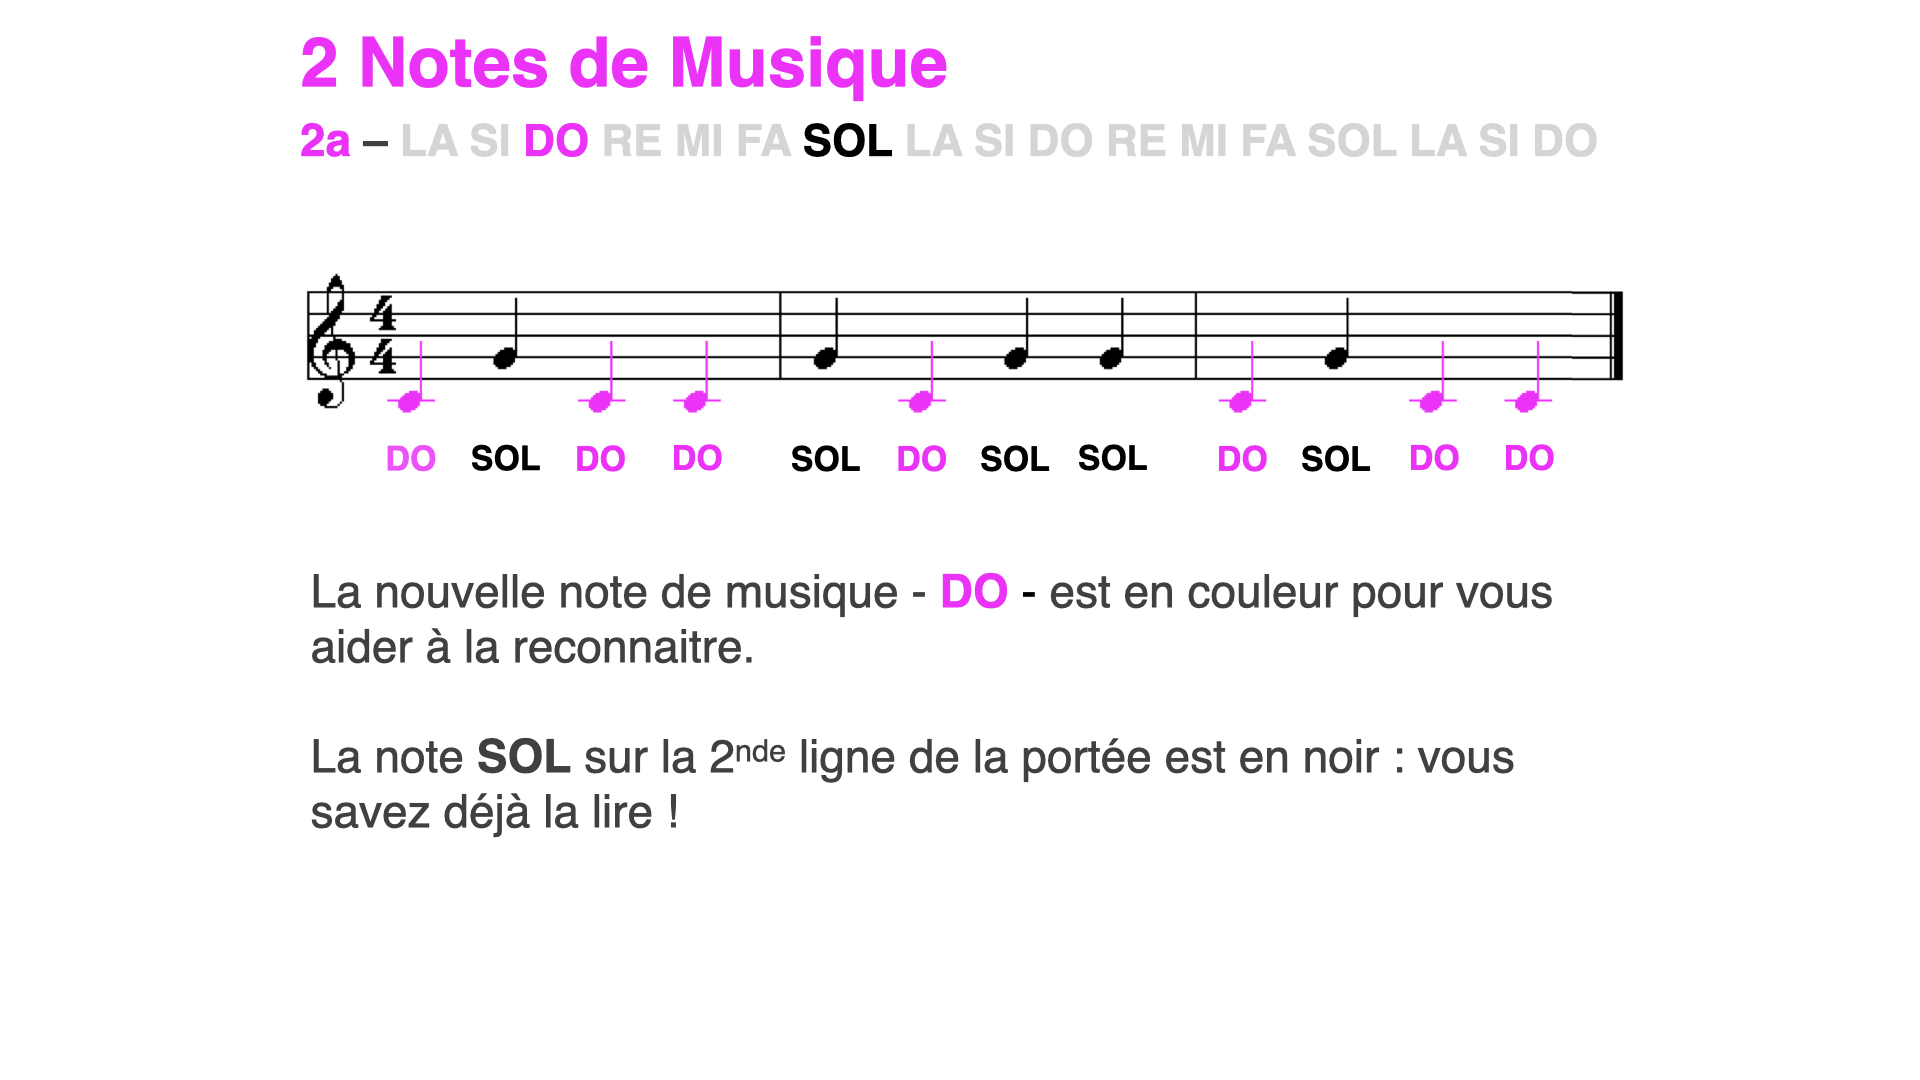 Lecture musicale 2 notes (DO SOL), nouvelle note en couleur : DO